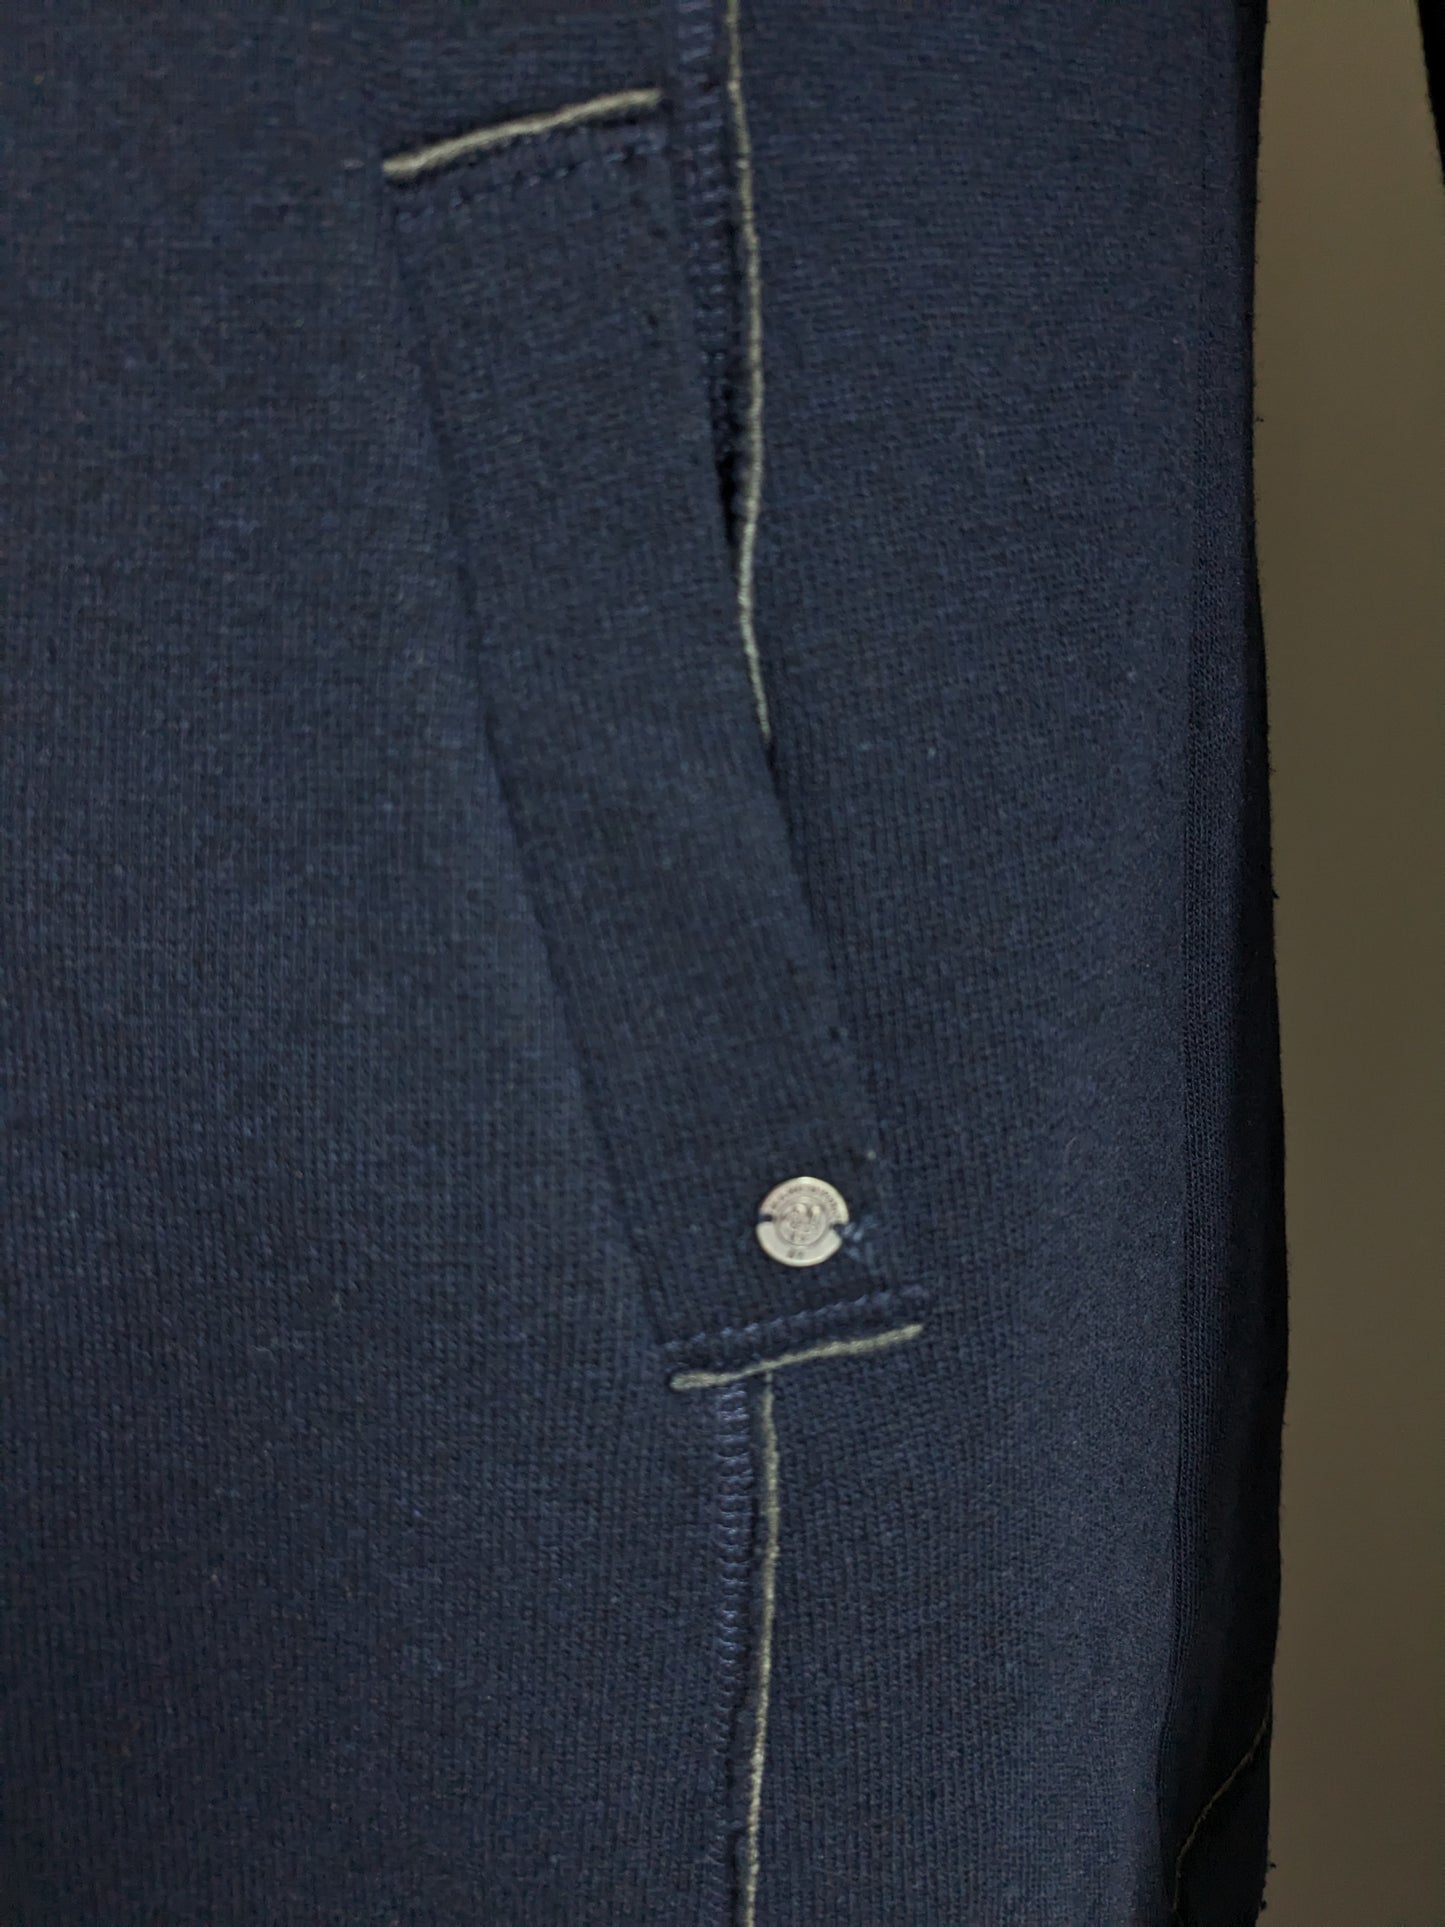 Marc O'Polo Wool Malf-Length Veste. Gris bleu foncé couleur. Taille M.